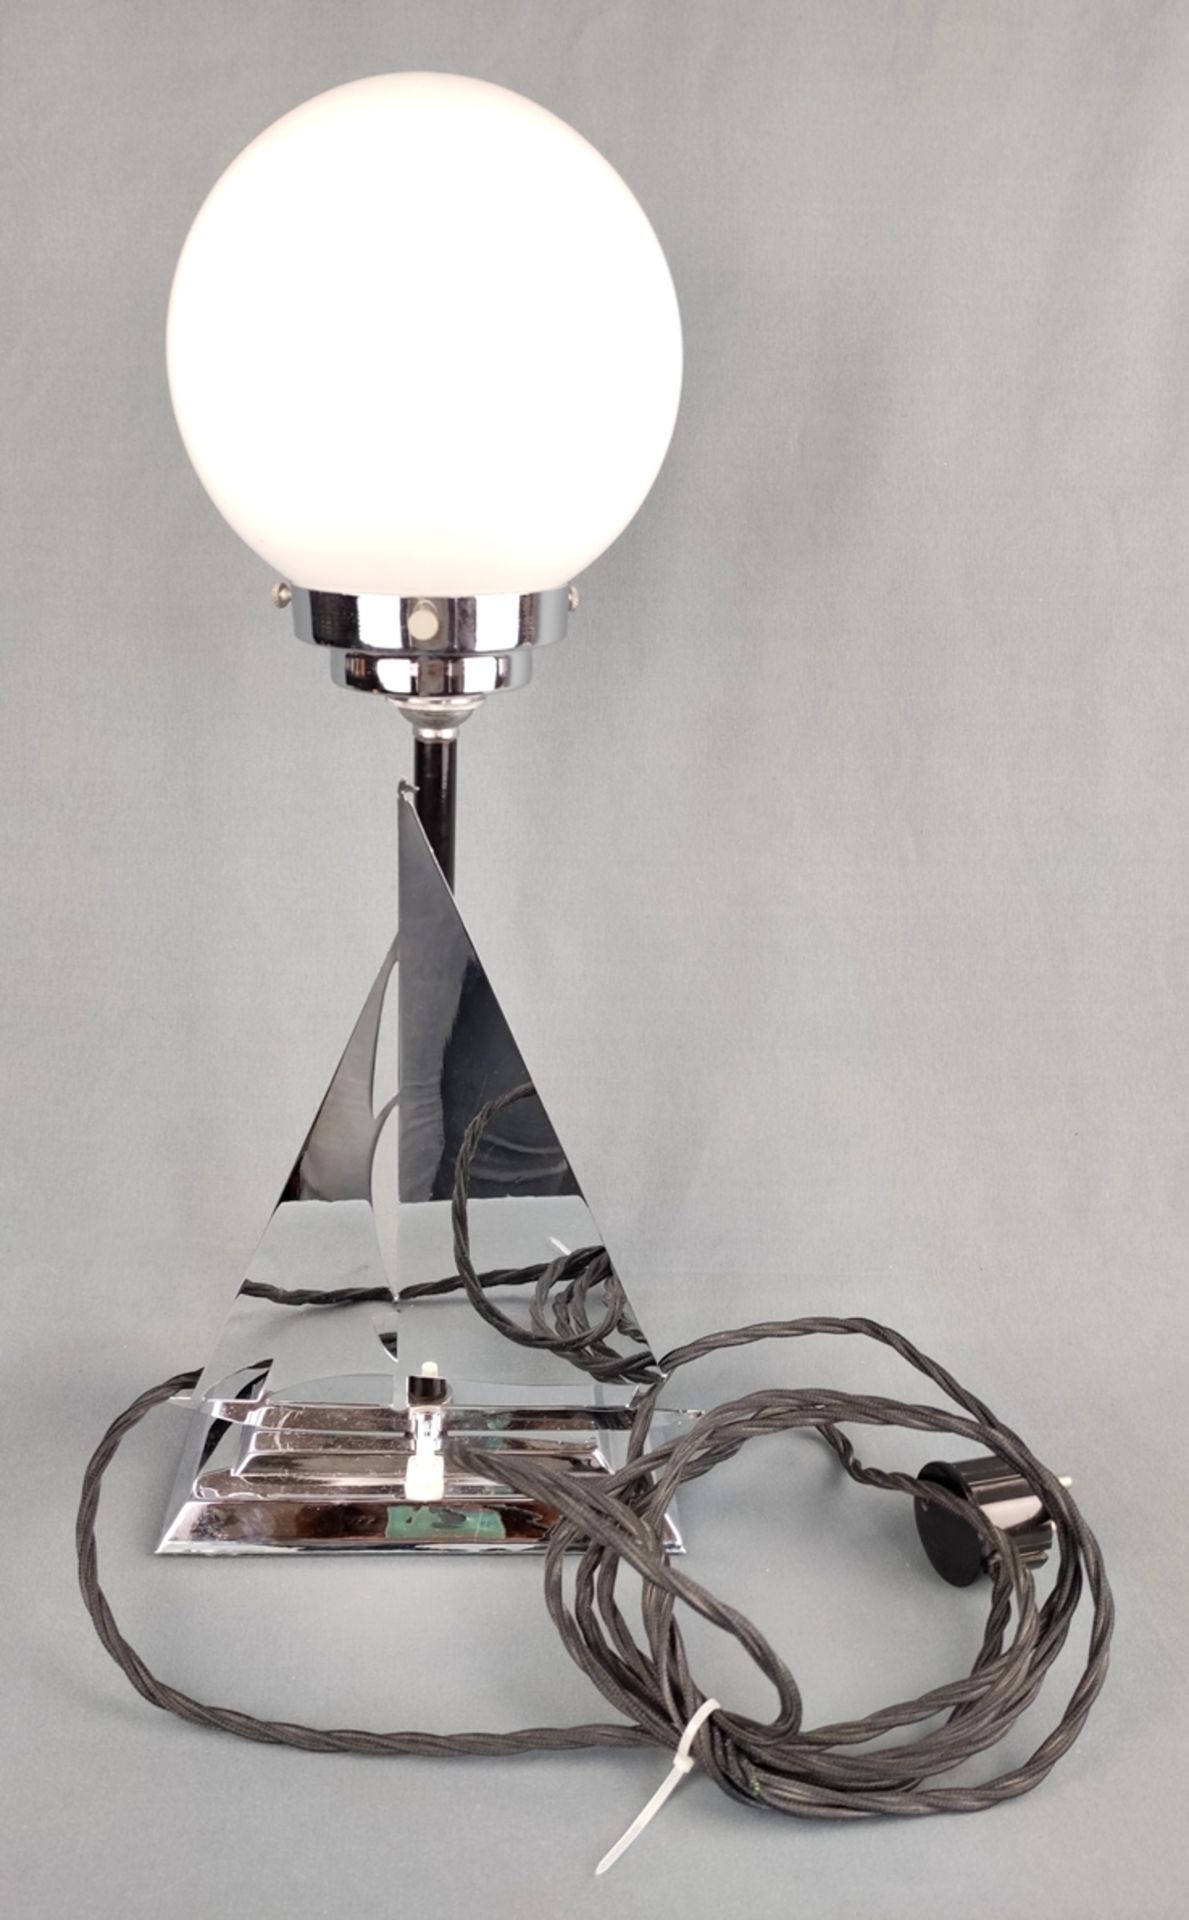 Art Déco "Segelschiff"-Lampe, rechteckiger abgetreppter Standfuß, darauf eine Segelboot-Silhouette, - Bild 2 aus 3